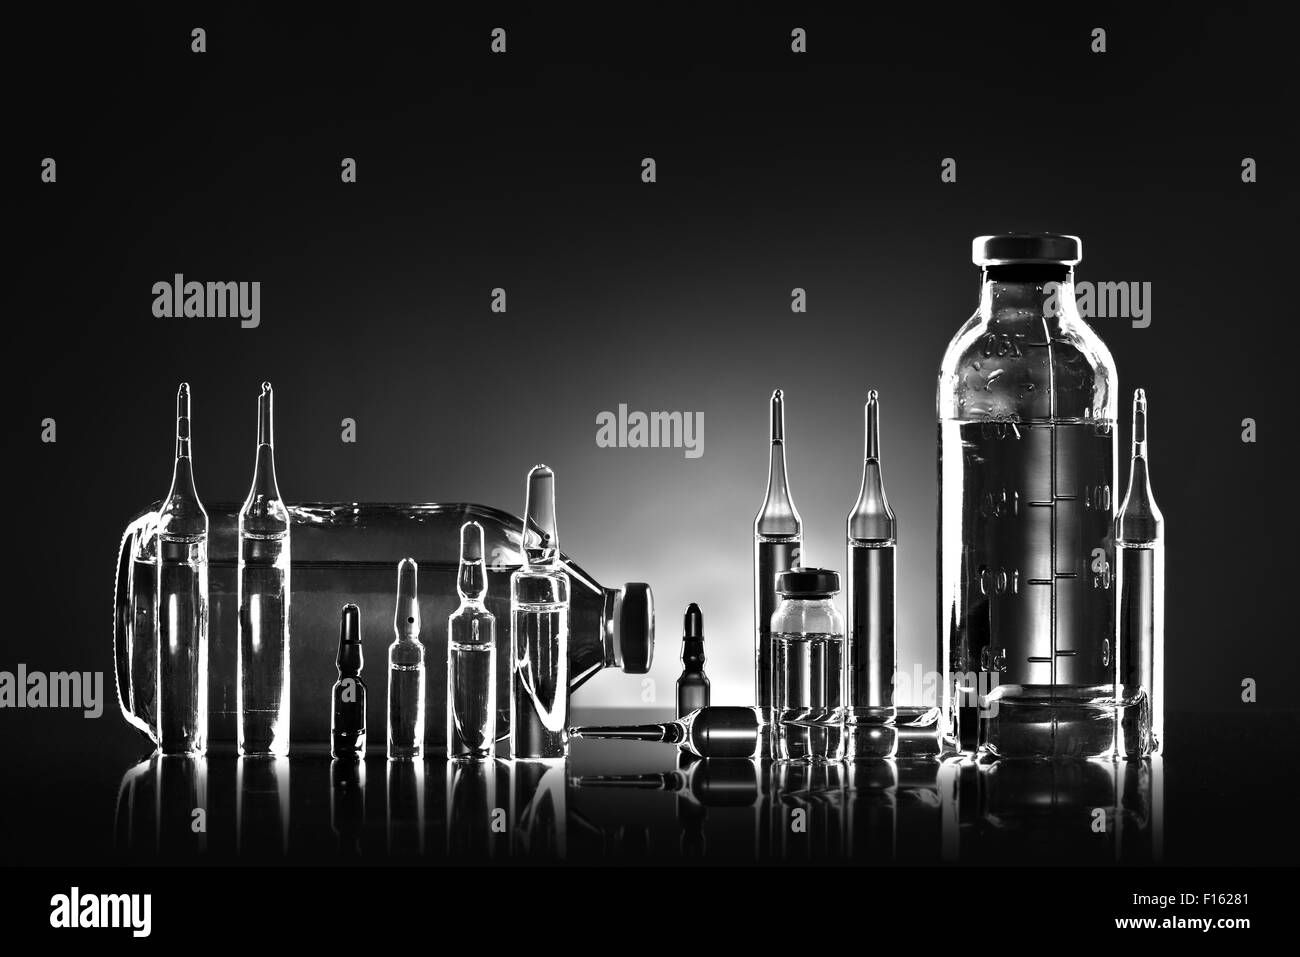 Grupo objeto de agente medicinal líquido en vidrio transparente, blanco y negro fotográfico horizontal Foto de stock